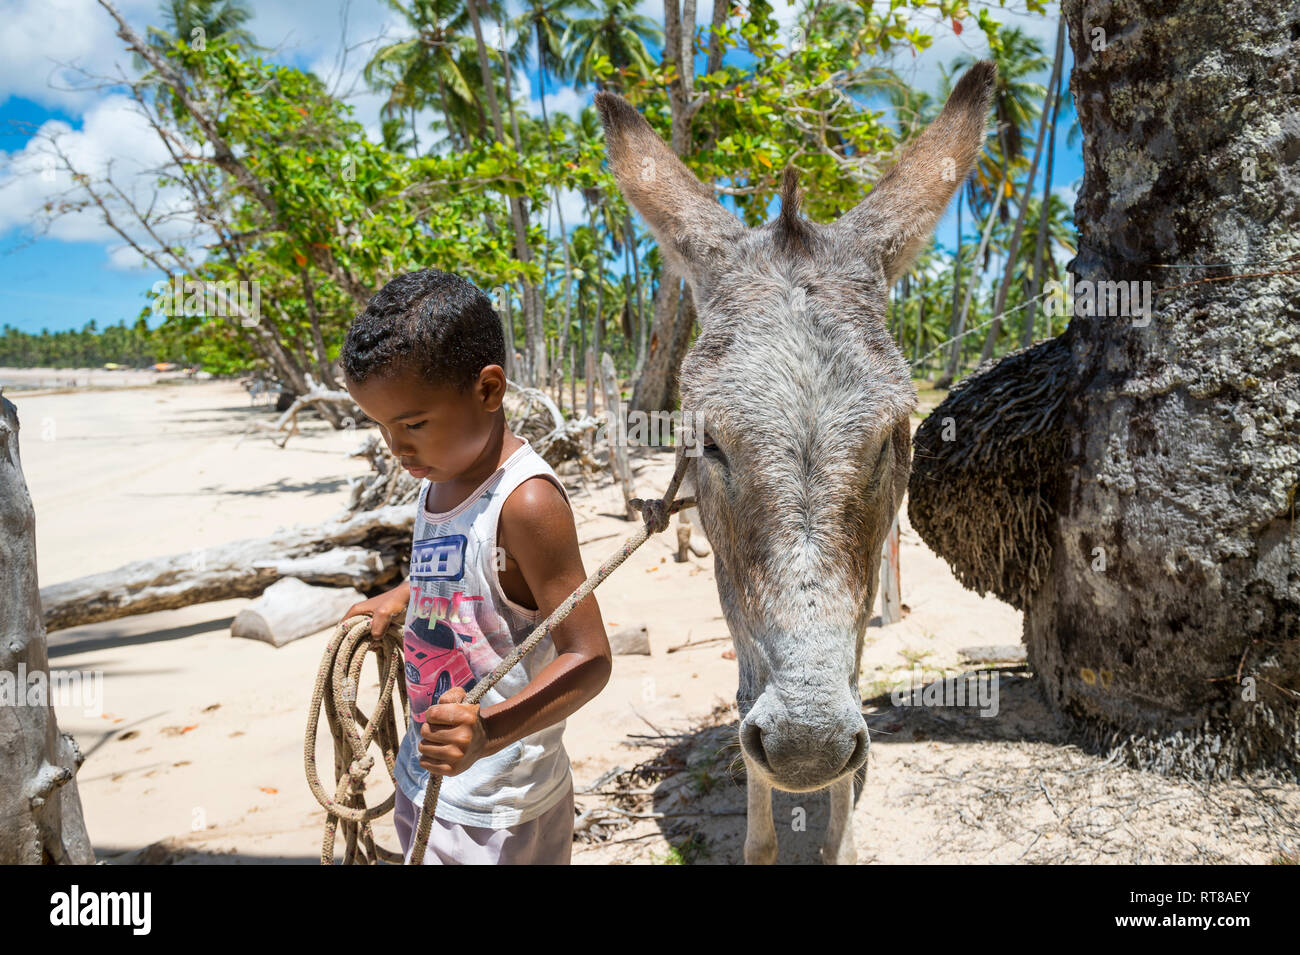 BAHIA, BRÉSIL - 11 mars 2017 : un groupe de jeunes peuplements avec une mule garçon brésilien sur la côte bordée de cocotiers d'une plage dans la région Nordeste à distance. Banque D'Images